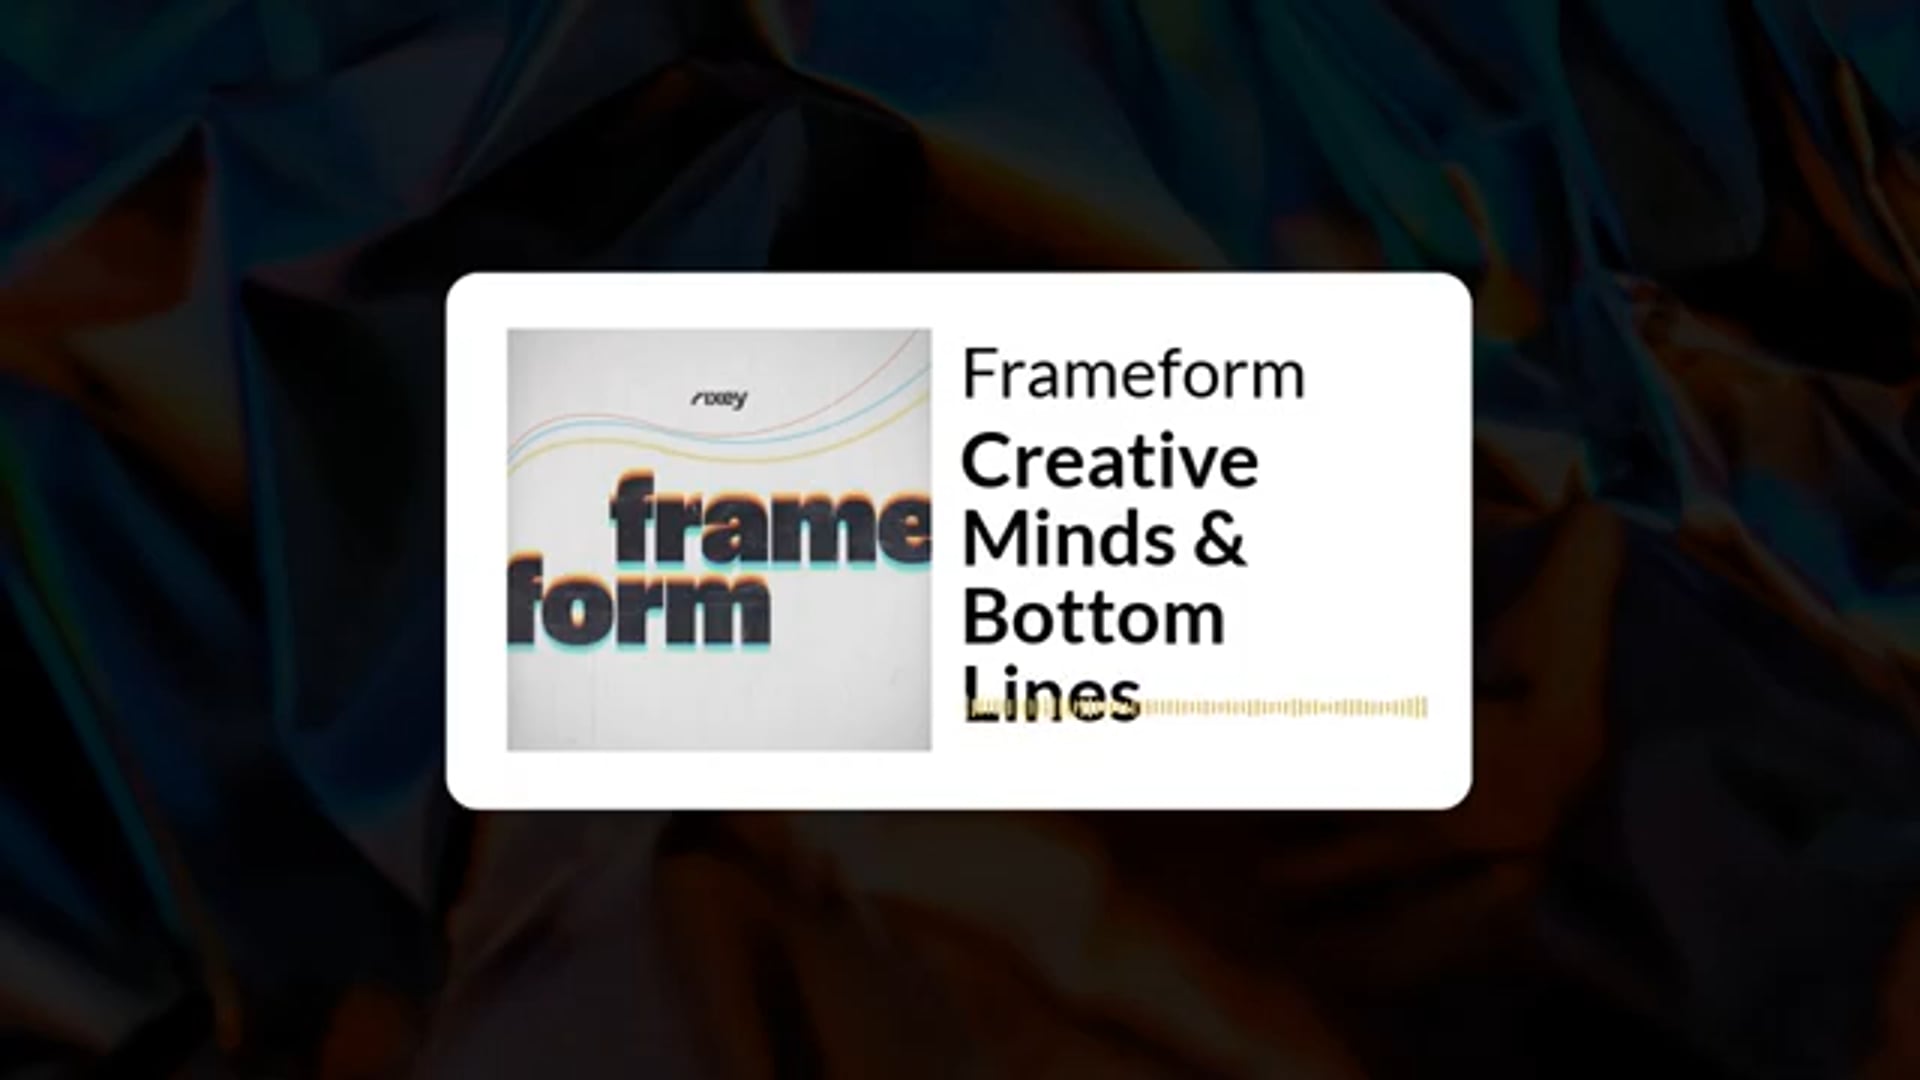 Frameform Podcast Episode 2: Creative Minds & Bottom Lines